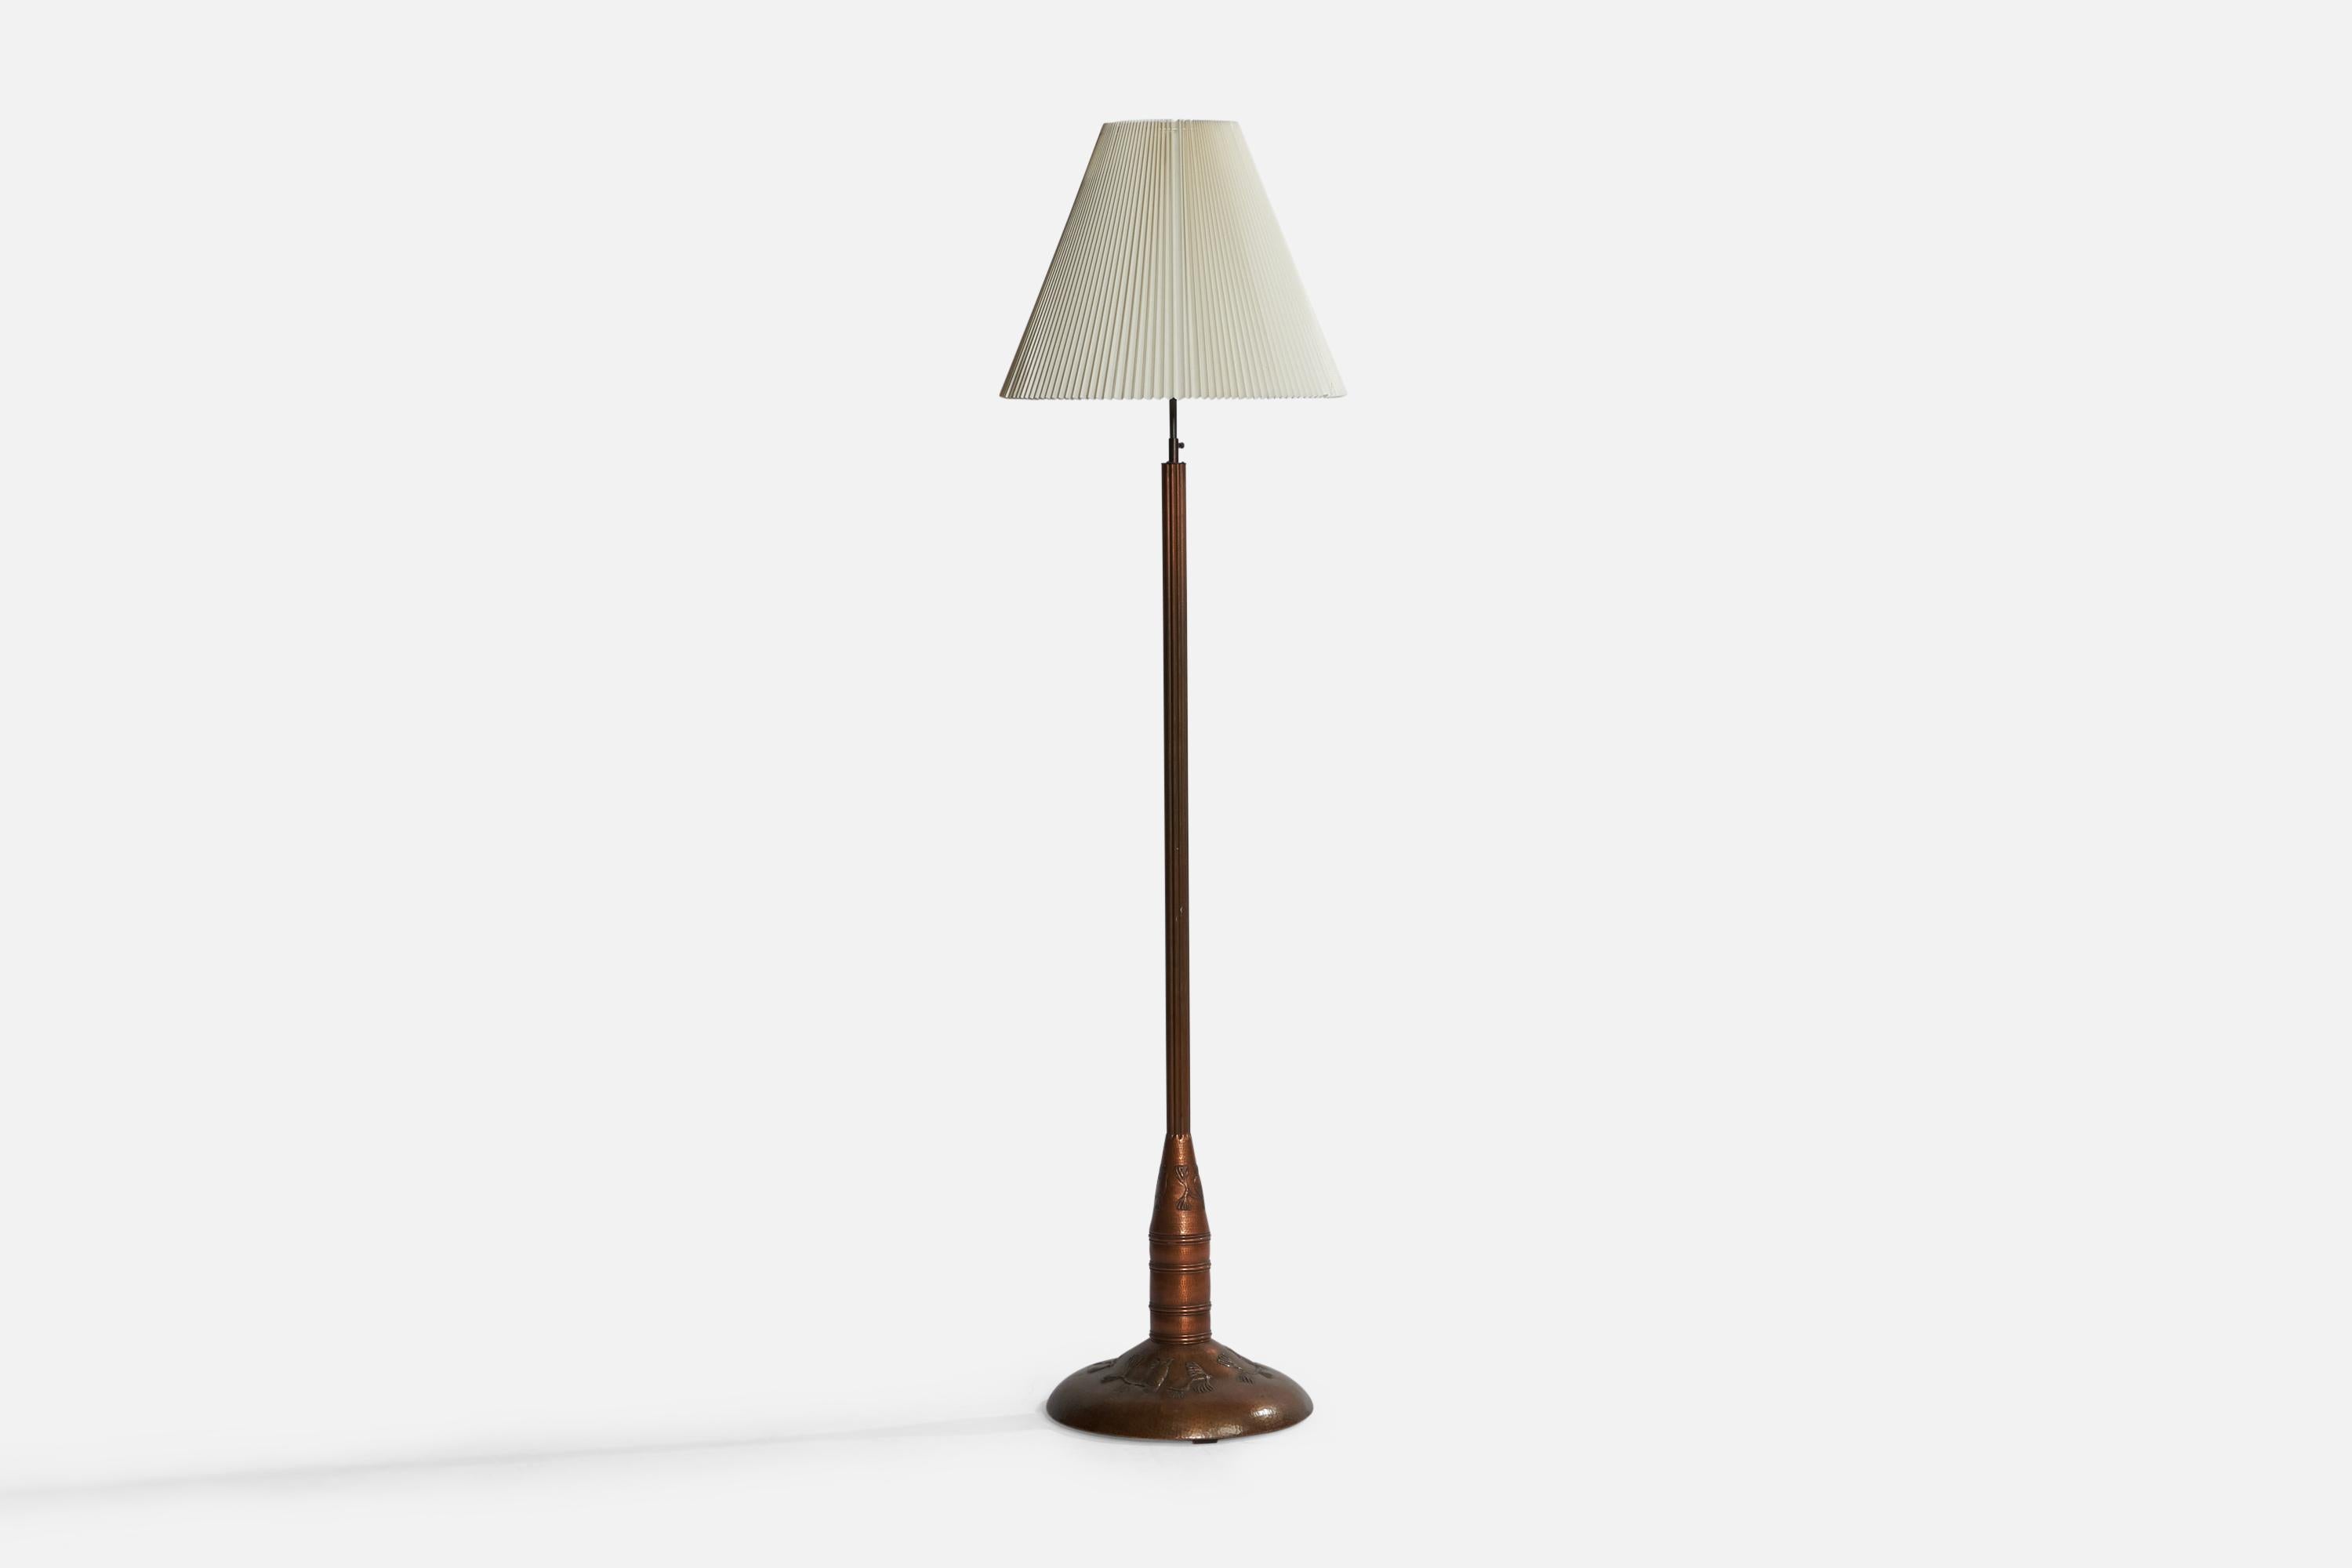 Ce grand lampadaire en cuivre, laiton et papier a été conçu et produit en Suède dans les années 1920.

Dimensions globales (pouces) : 78.75